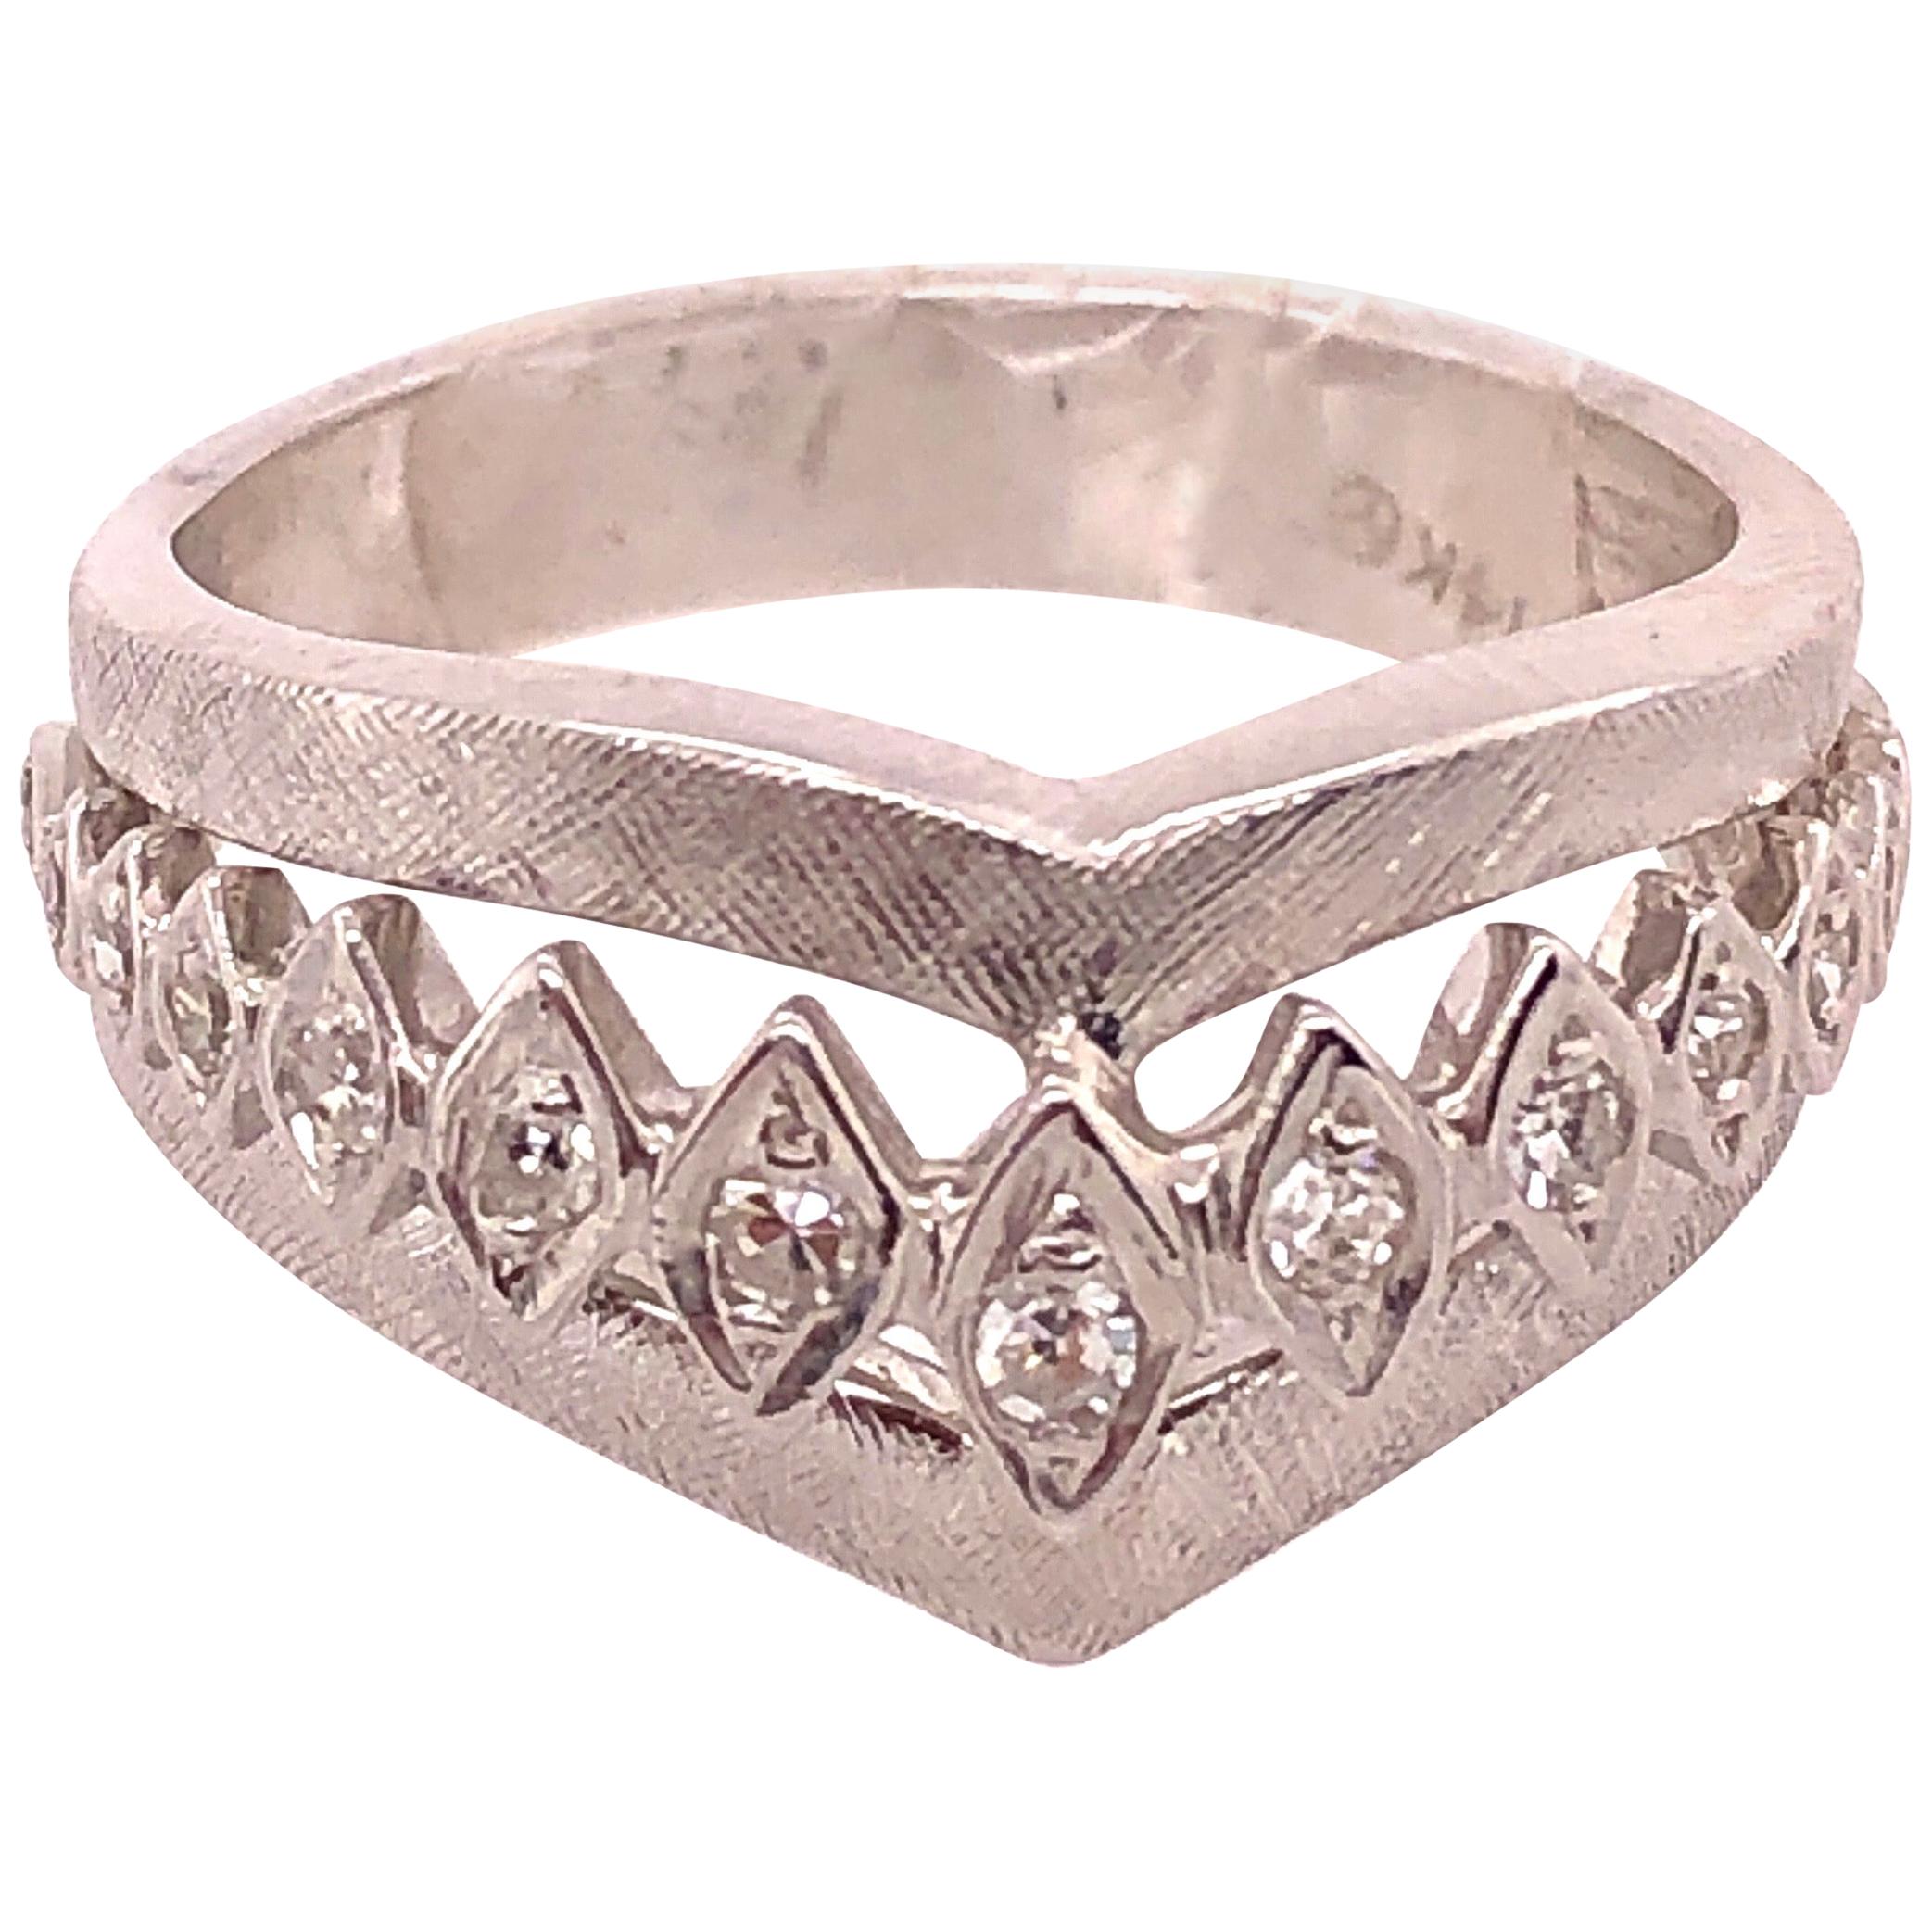 14 Karat White Gold and Diamond Geometric Ring or Bridal Band 0.33 TDW